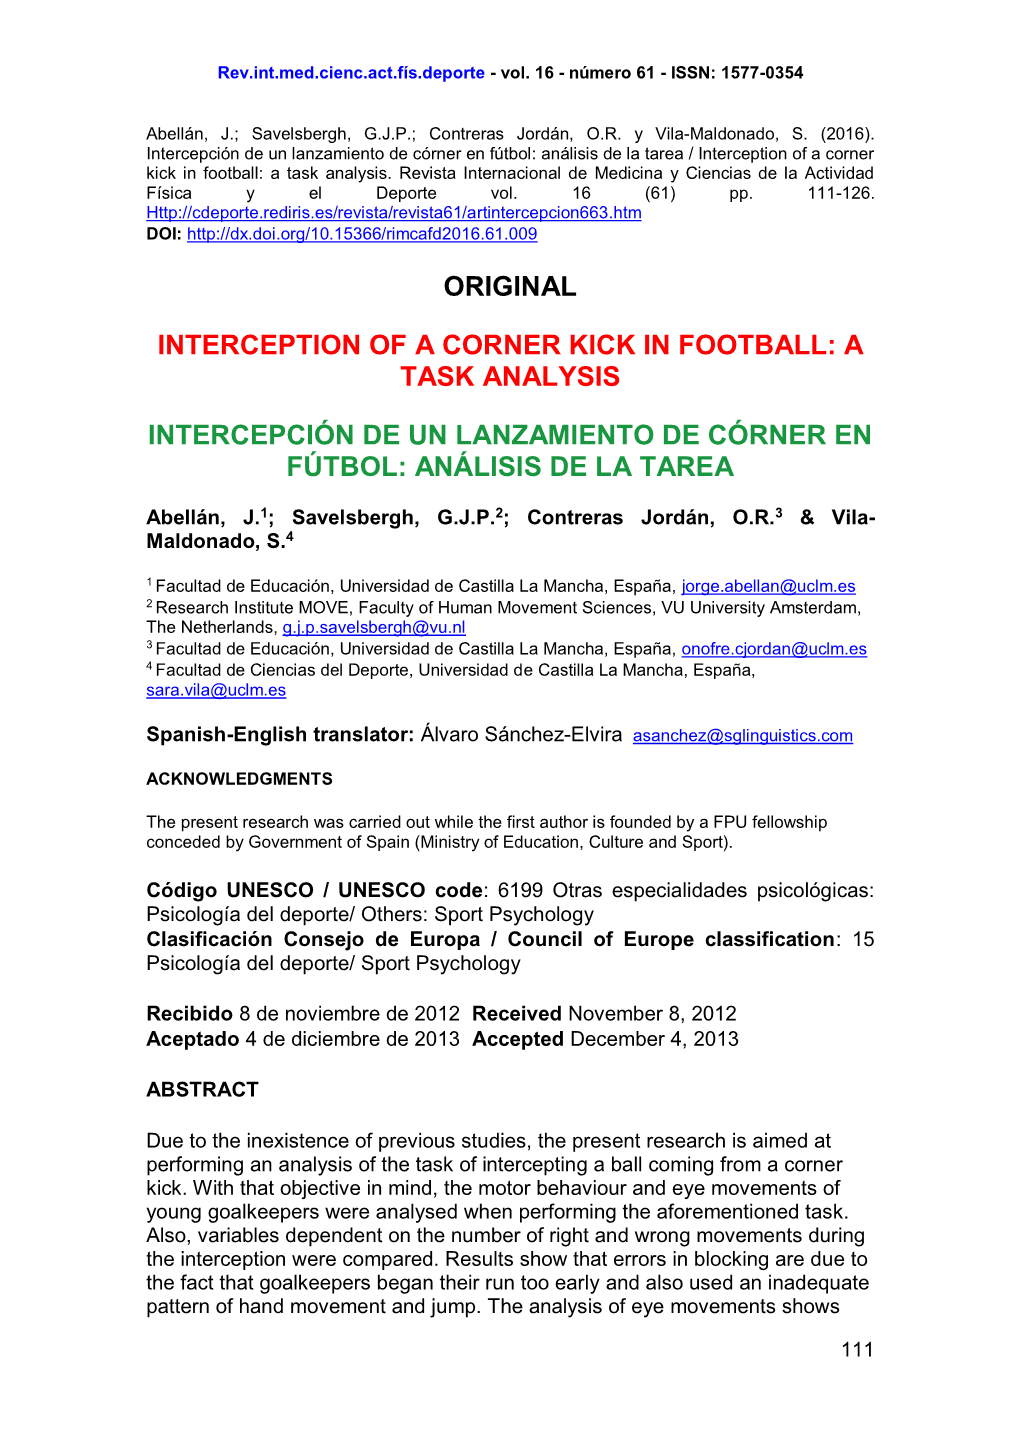 Original Interception of a Corner Kick in Football: a Task Analysis Intercepción De Un Lanzamiento De Córner En Fútbol: Anál